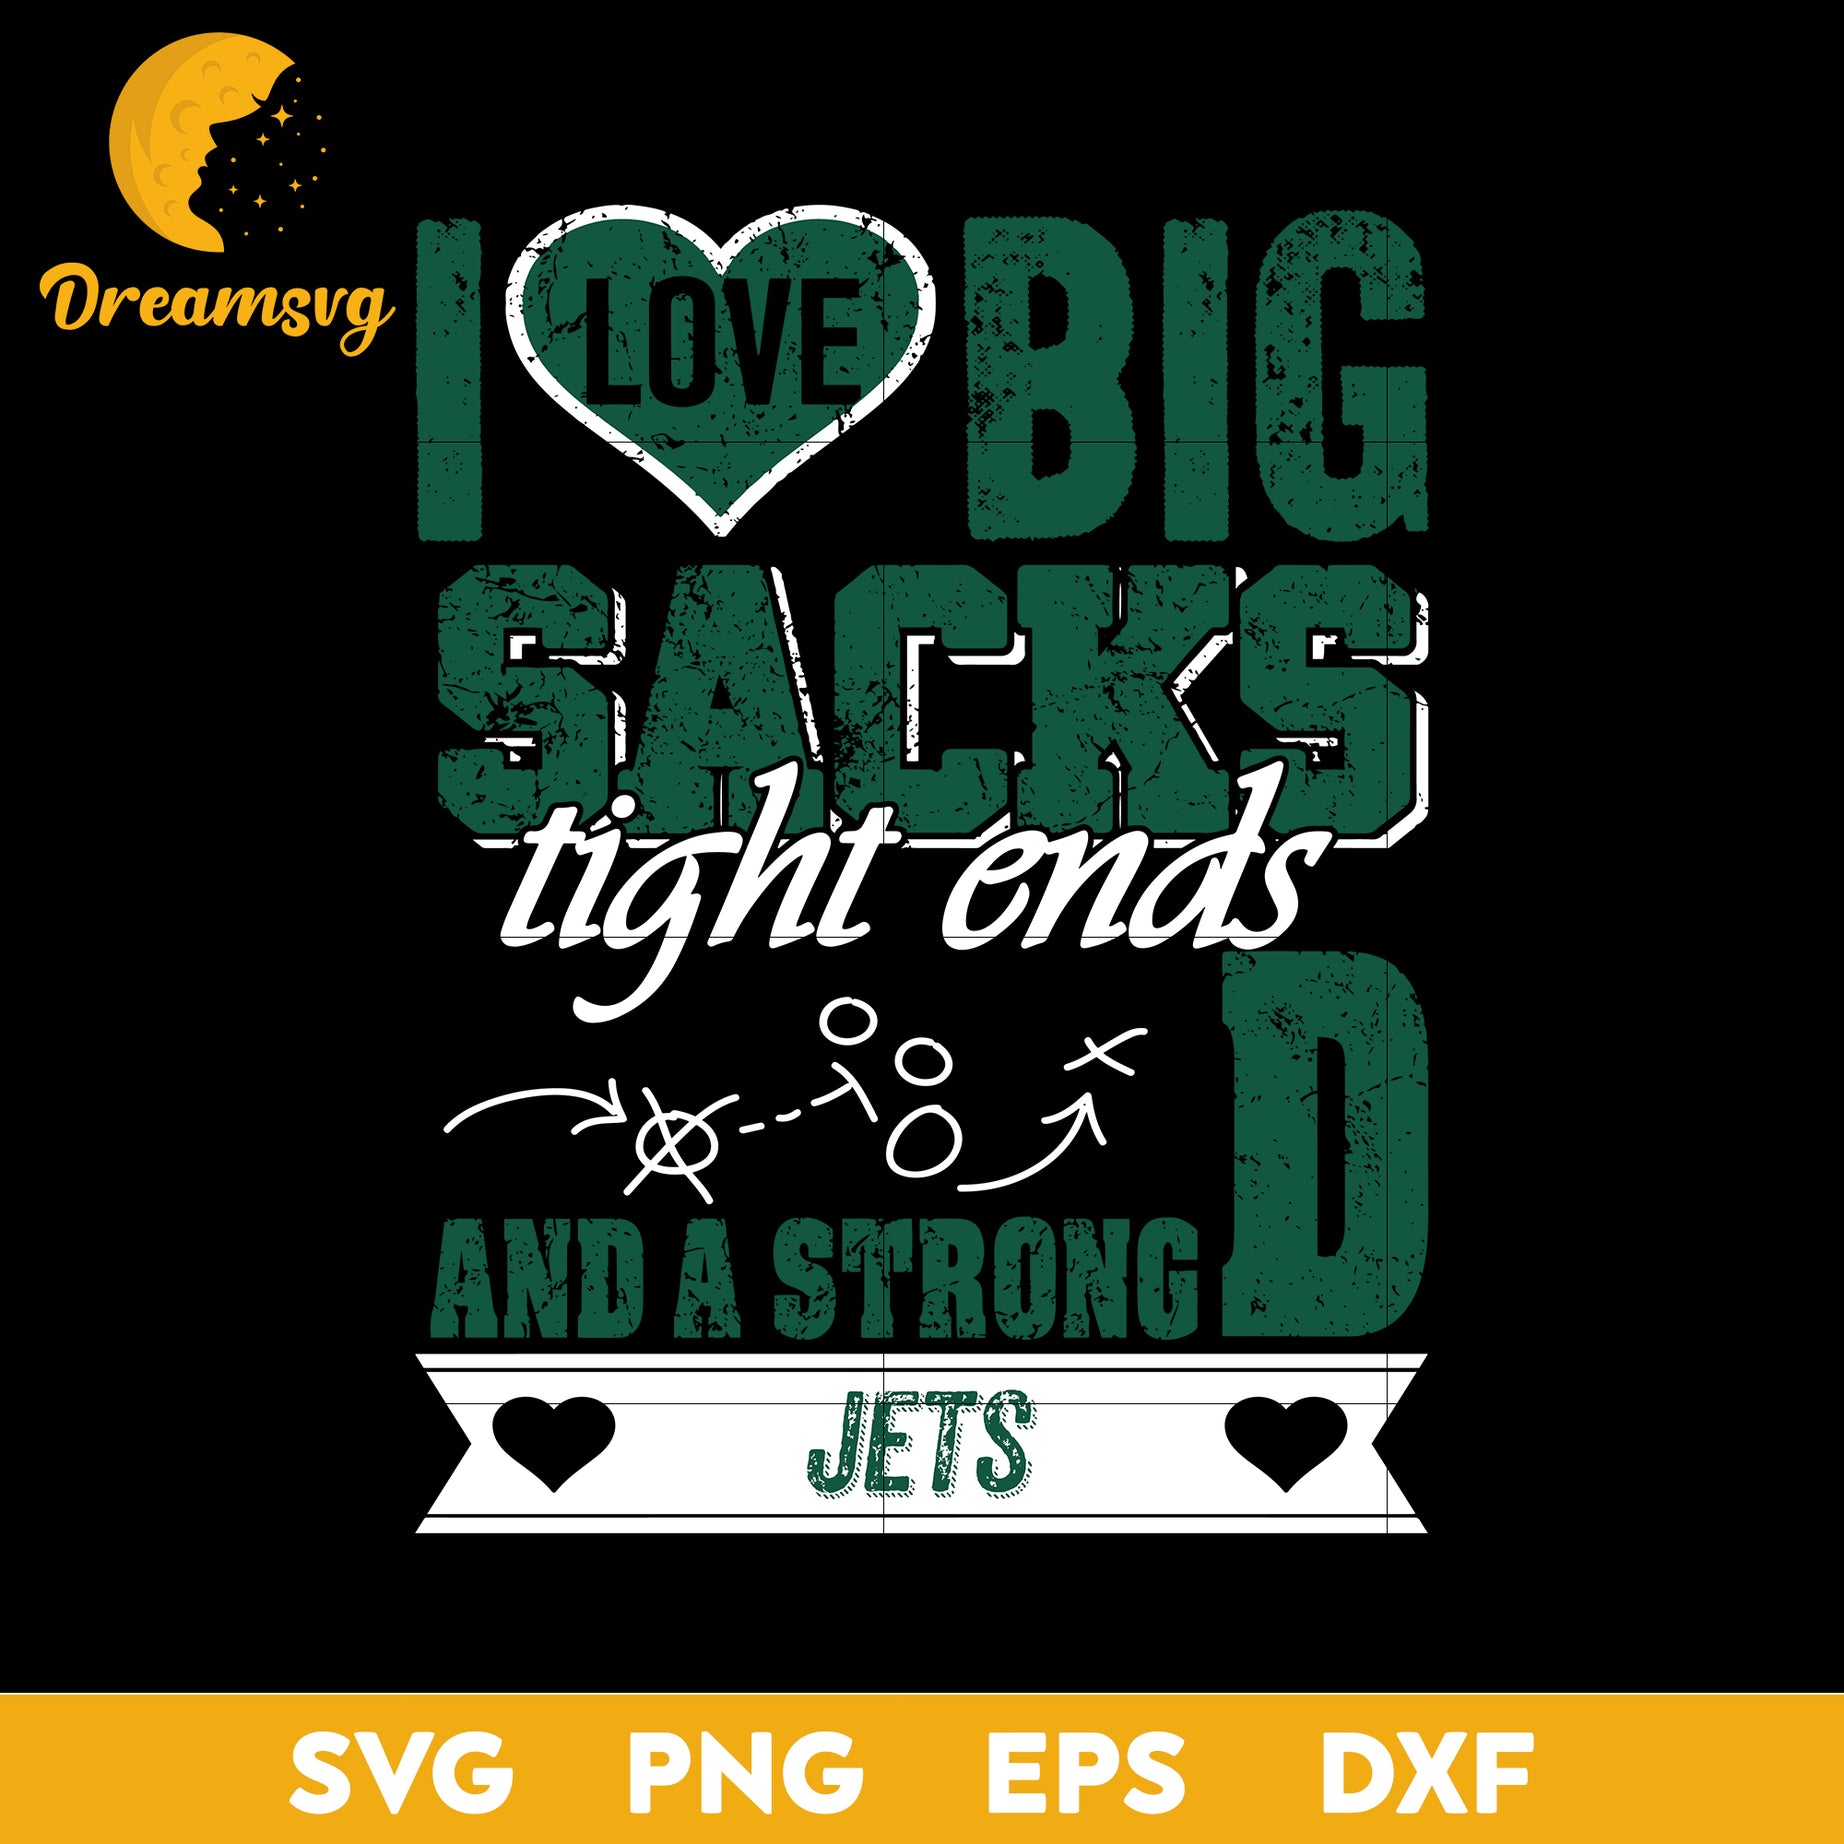 I Love Big Sacks tight ends and a strongD New York Jets Svg , Nfl Svg, Png, Dxf, Eps Digital File.